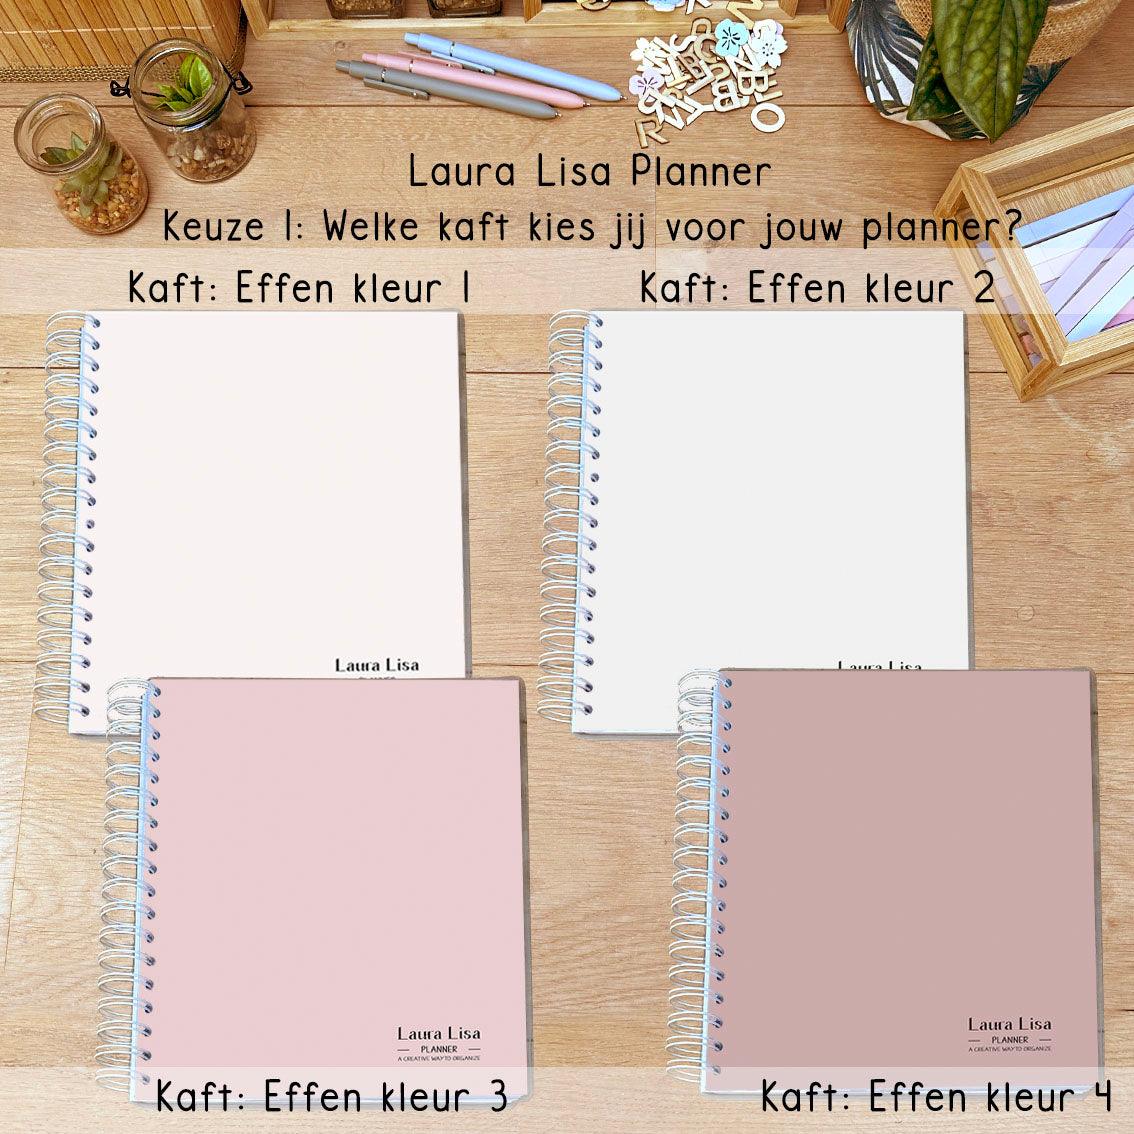 Ontdek onze nieuwe effen kaften voor de Laura Lisa Planner! Personaliseer je planner met kleuren die passen bij jouw stijl en voorkeuren. Welke kleur past het beste bij jou?